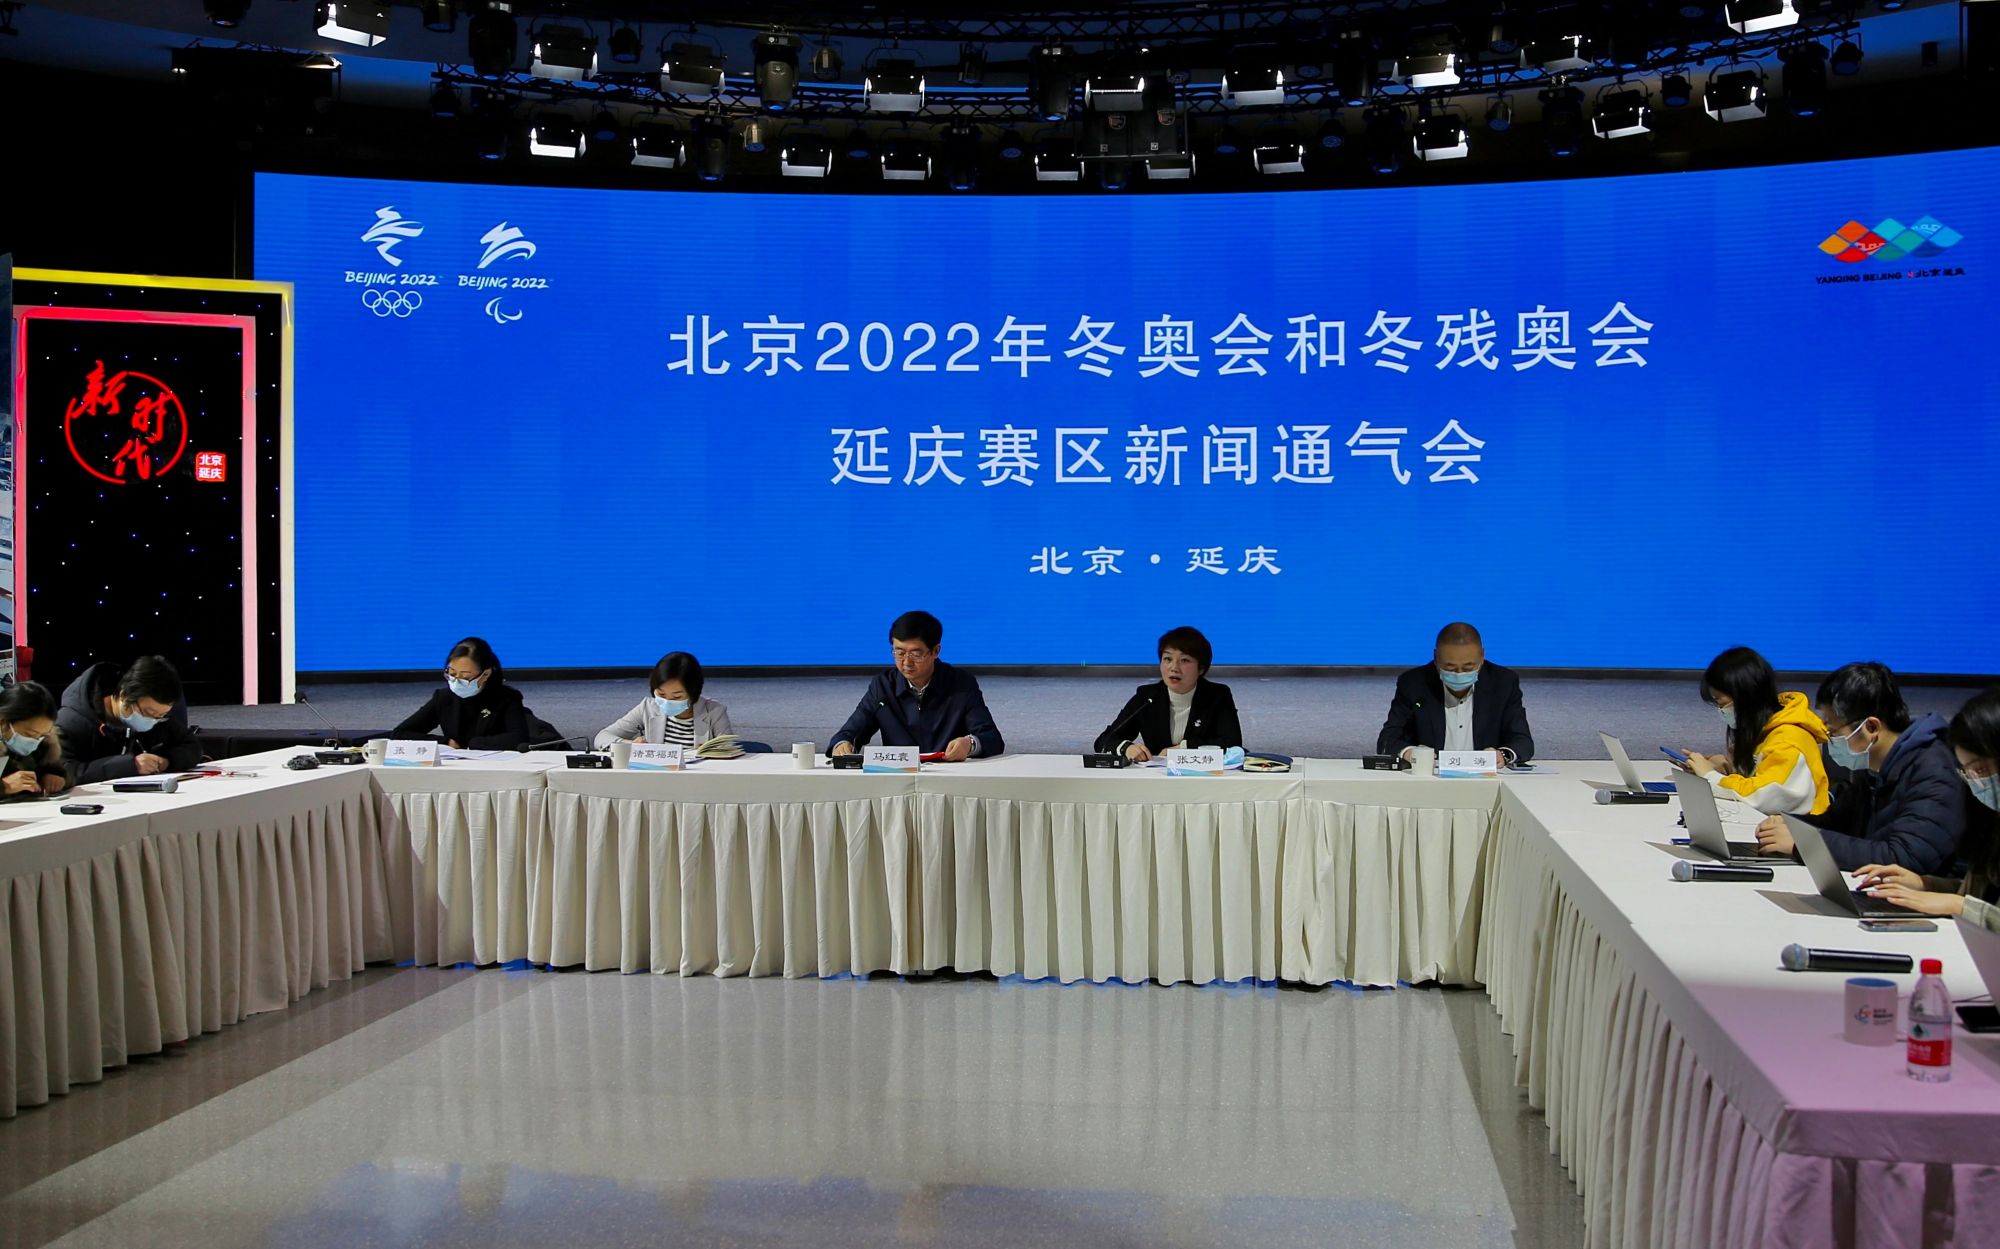 昨日,北京2022年冬奥会和冬残奥会延庆赛区新闻通气会在延庆融媒体